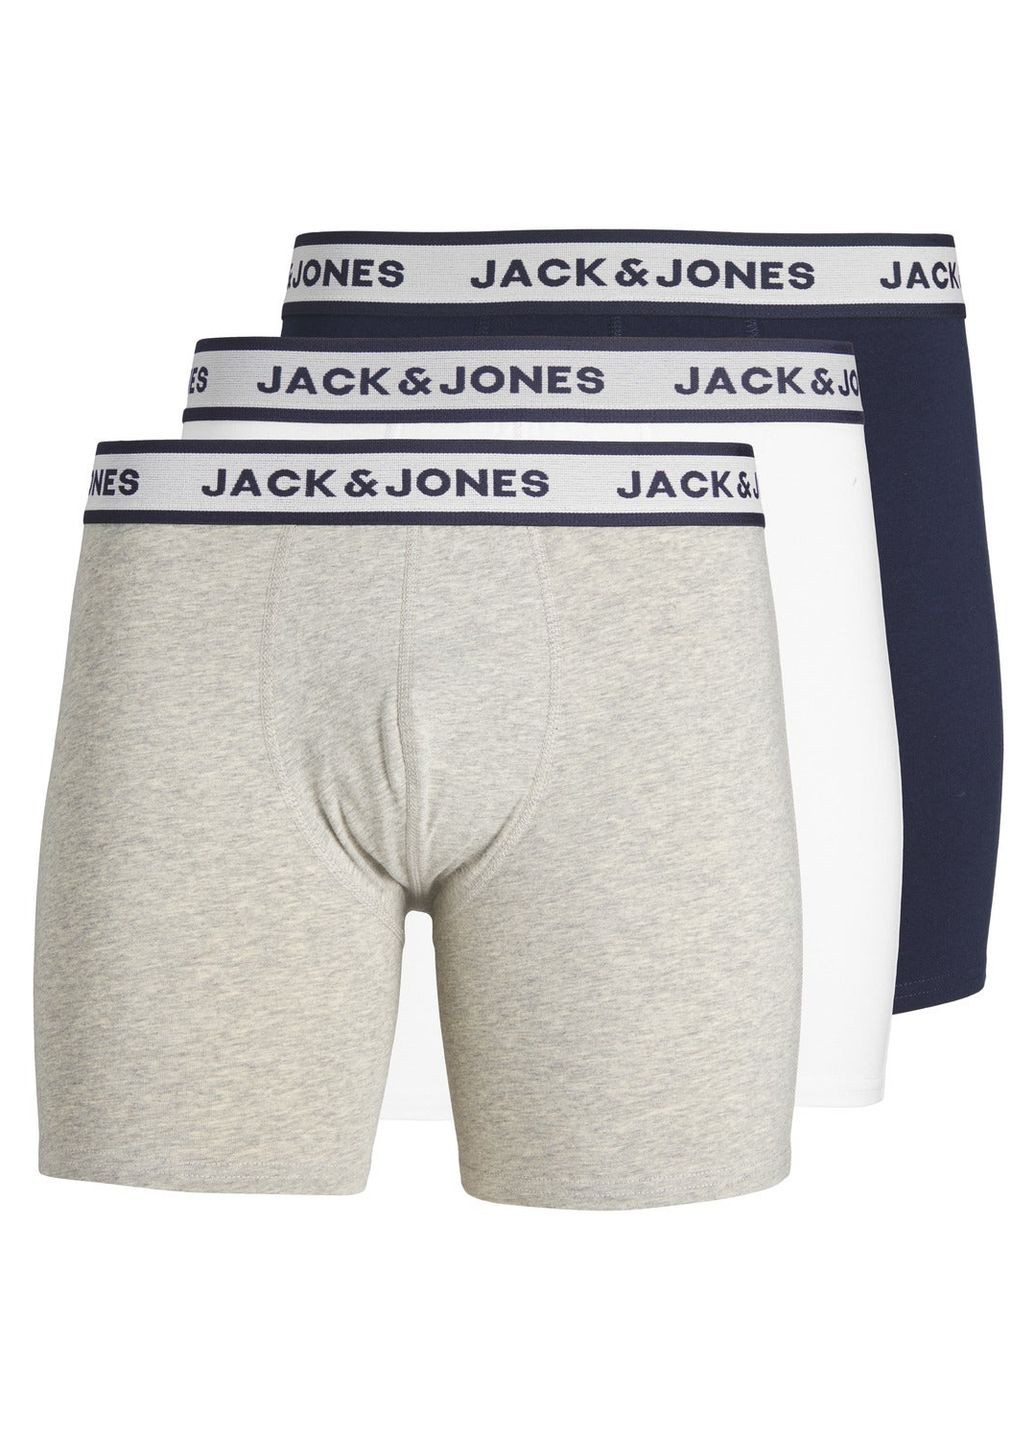 Комплект трусів,темно-синій-білий-сірий,JACK&JONES Jack & Jones (274235725)